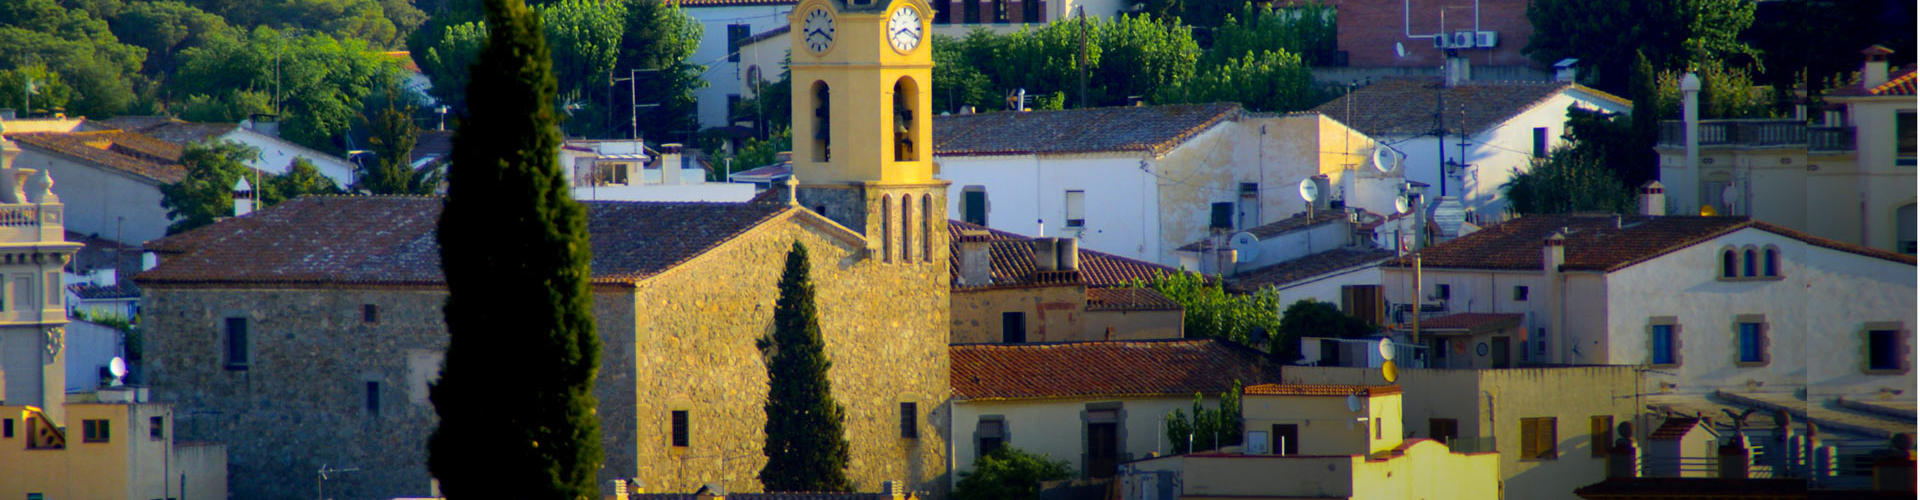 Església de la Santa Creu i poble de Cabrils.